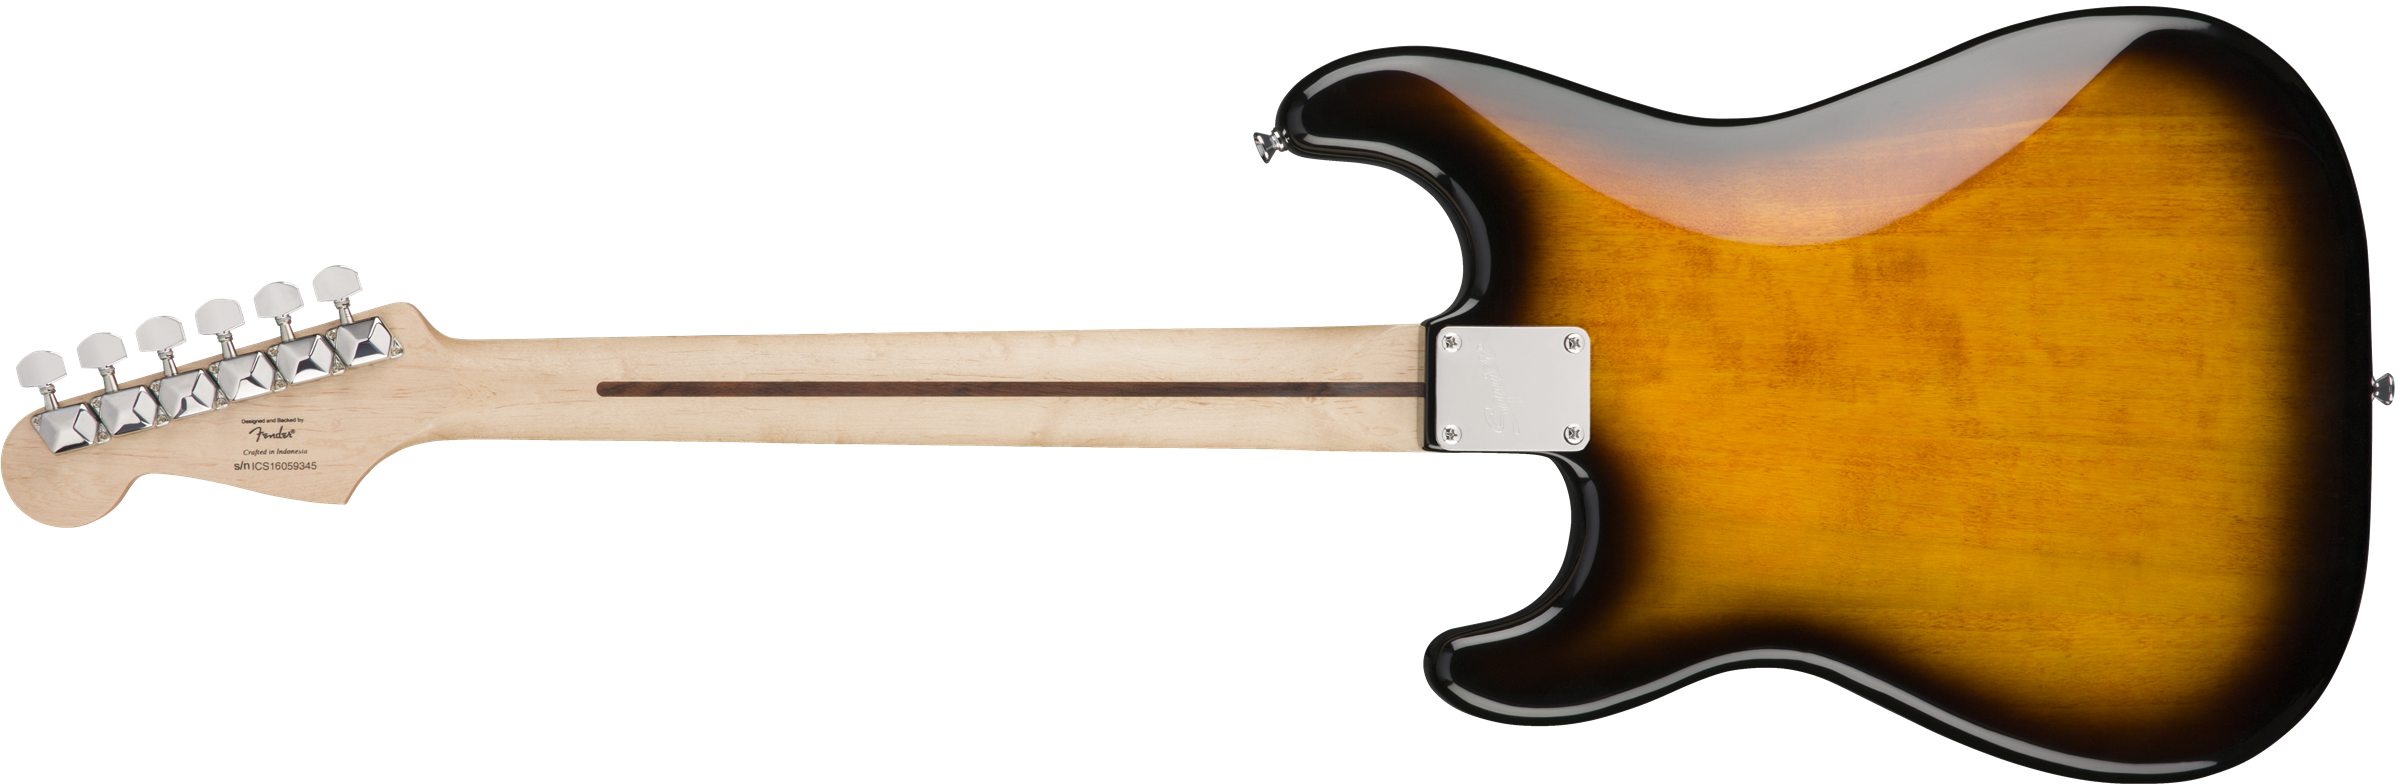 Squier Bullet Stratocaster Ht Sss Lau - Brown Sunburst - Str shape electric guitar - Variation 1